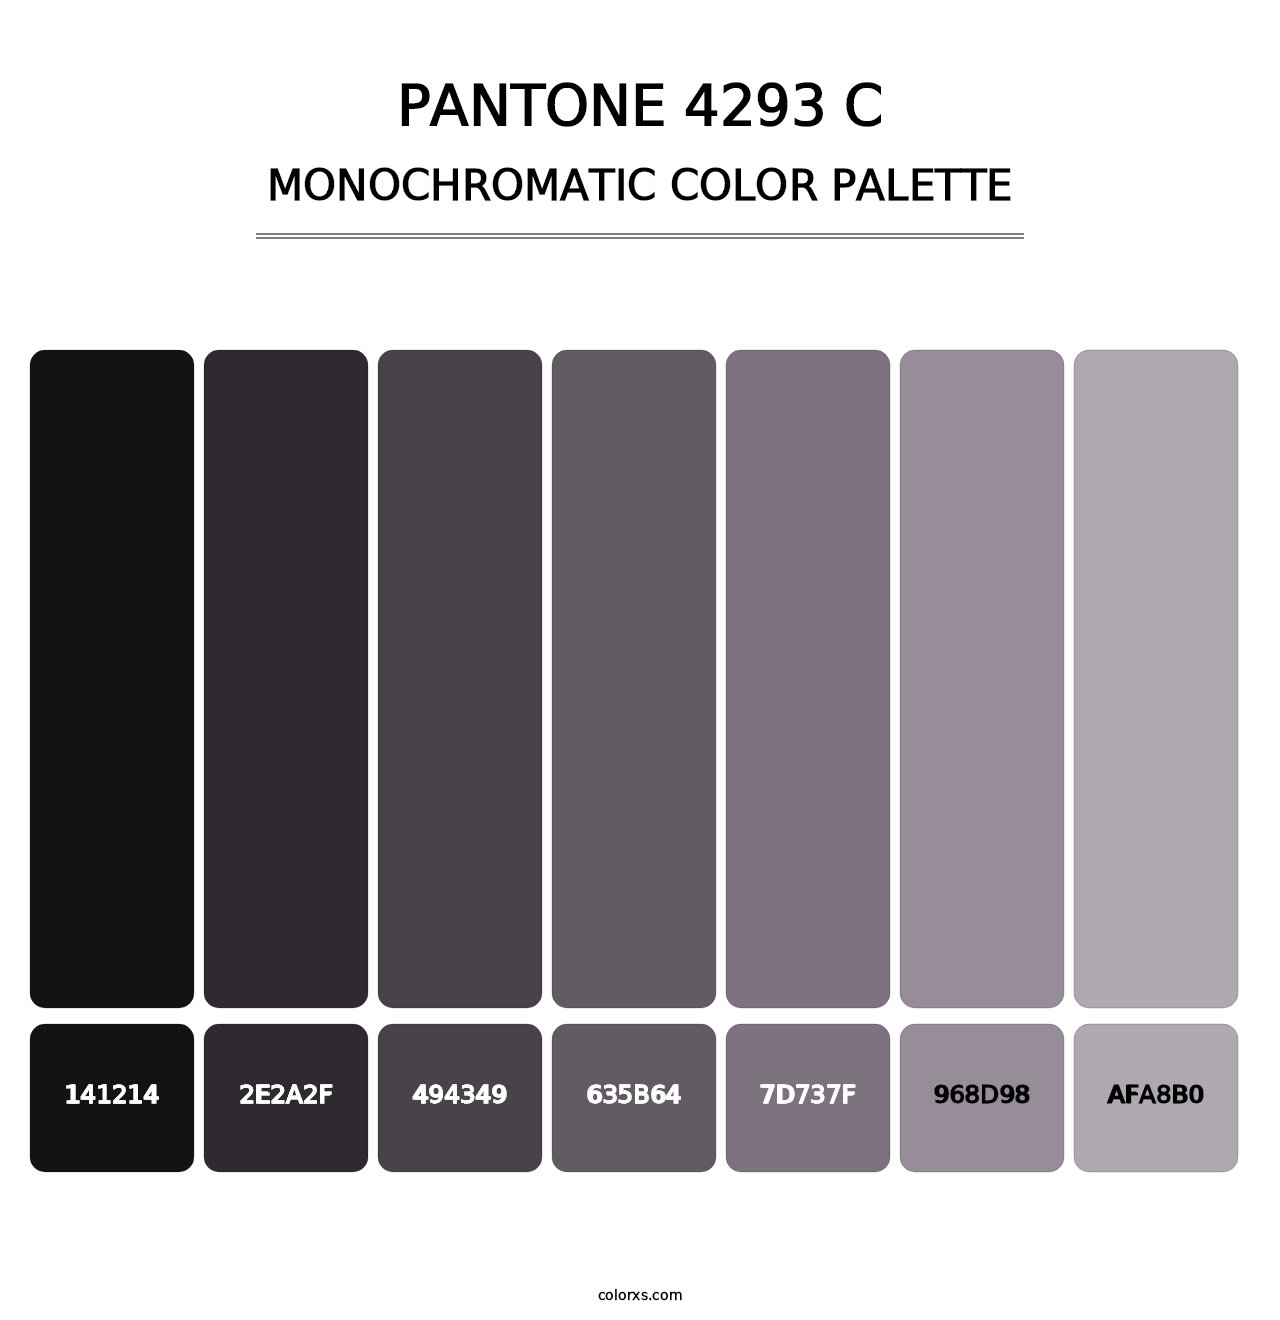 PANTONE 4293 C - Monochromatic Color Palette